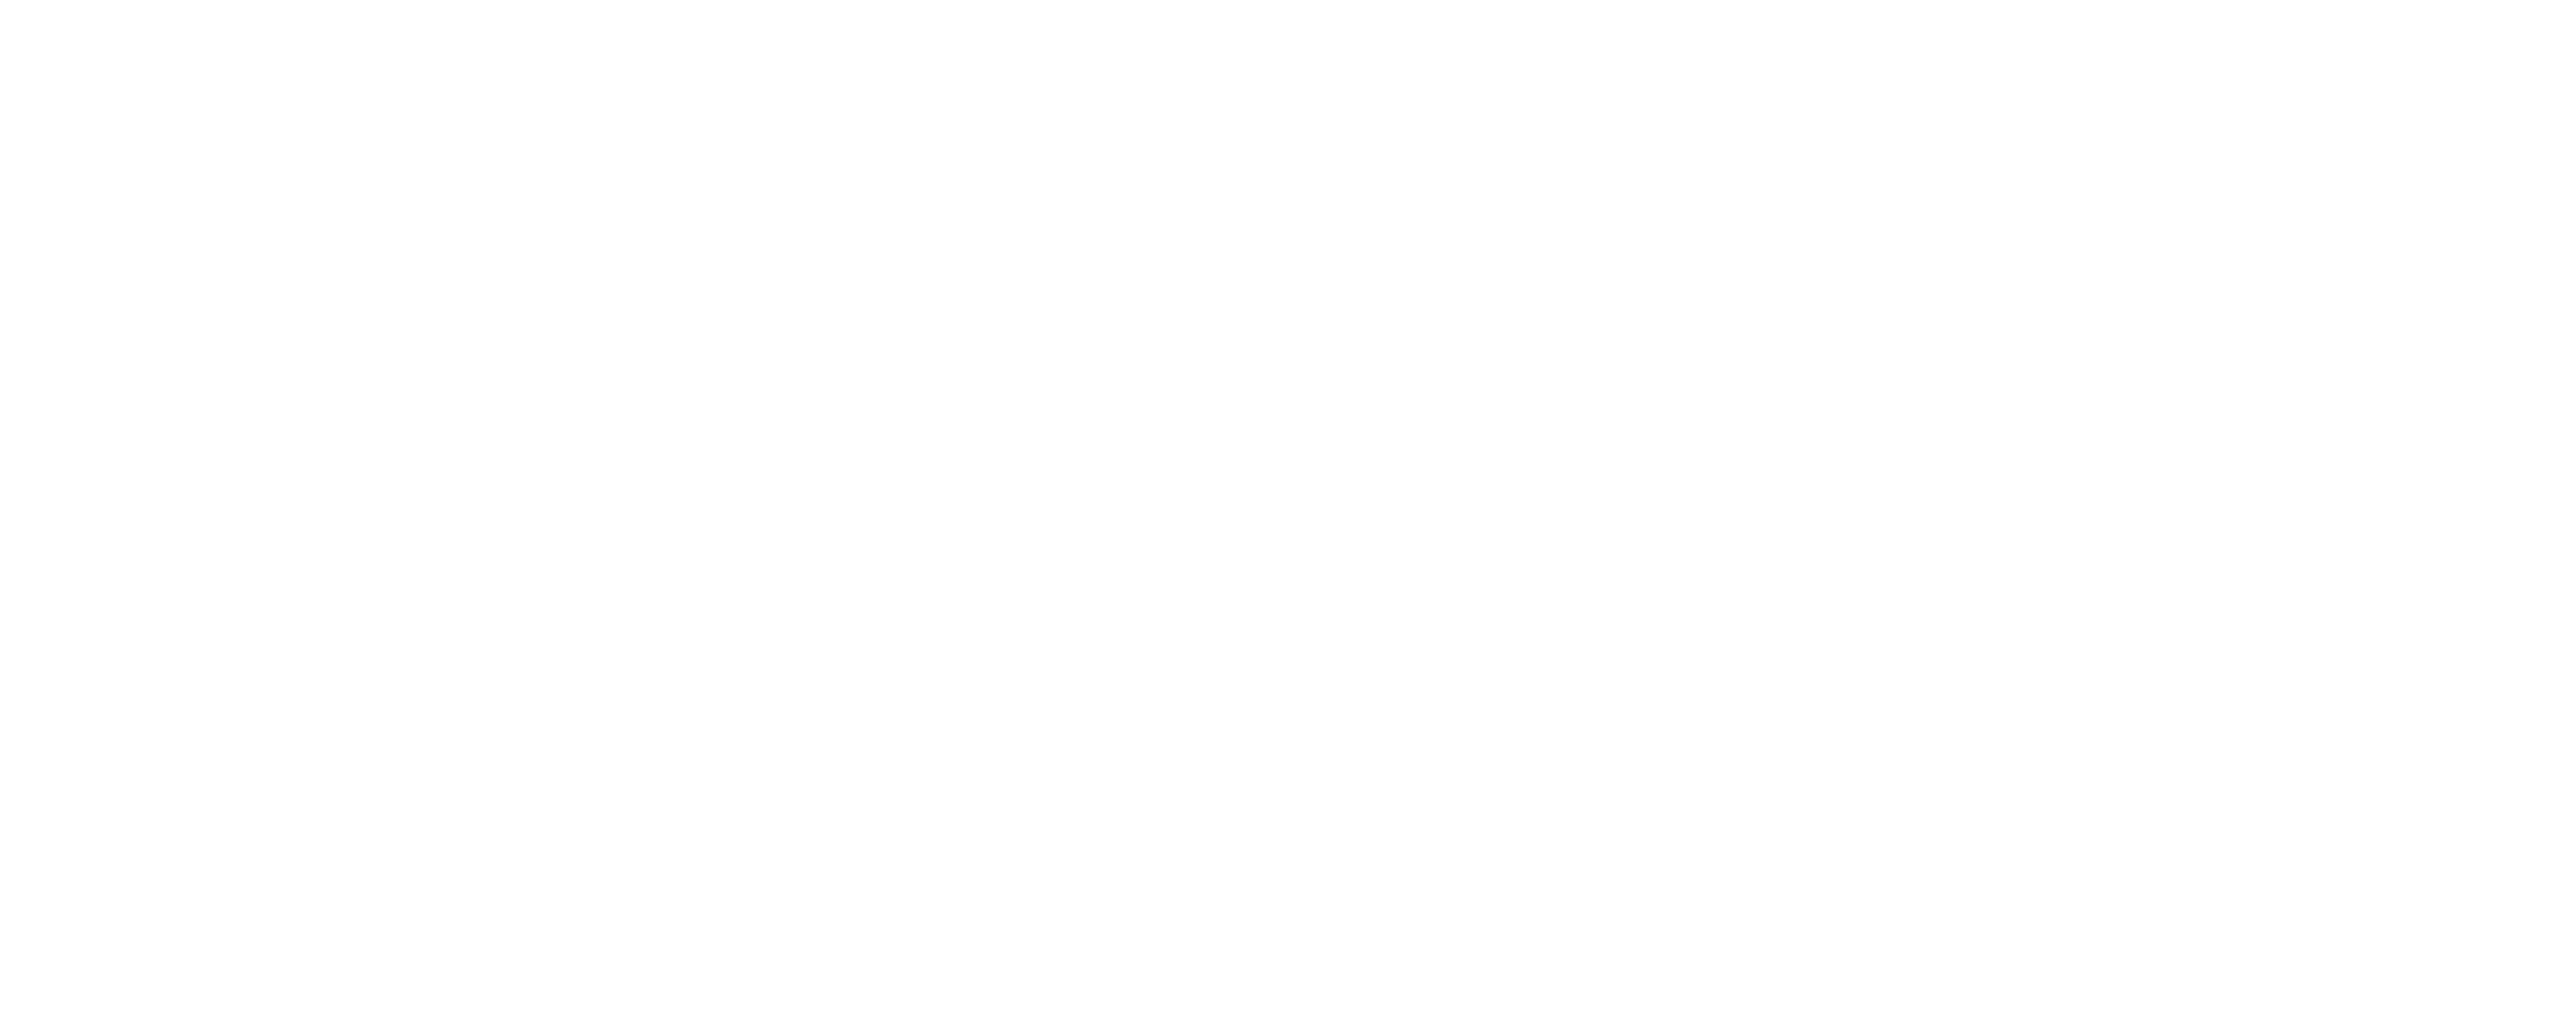 Good Samaritan Nursing & Rehabilitation